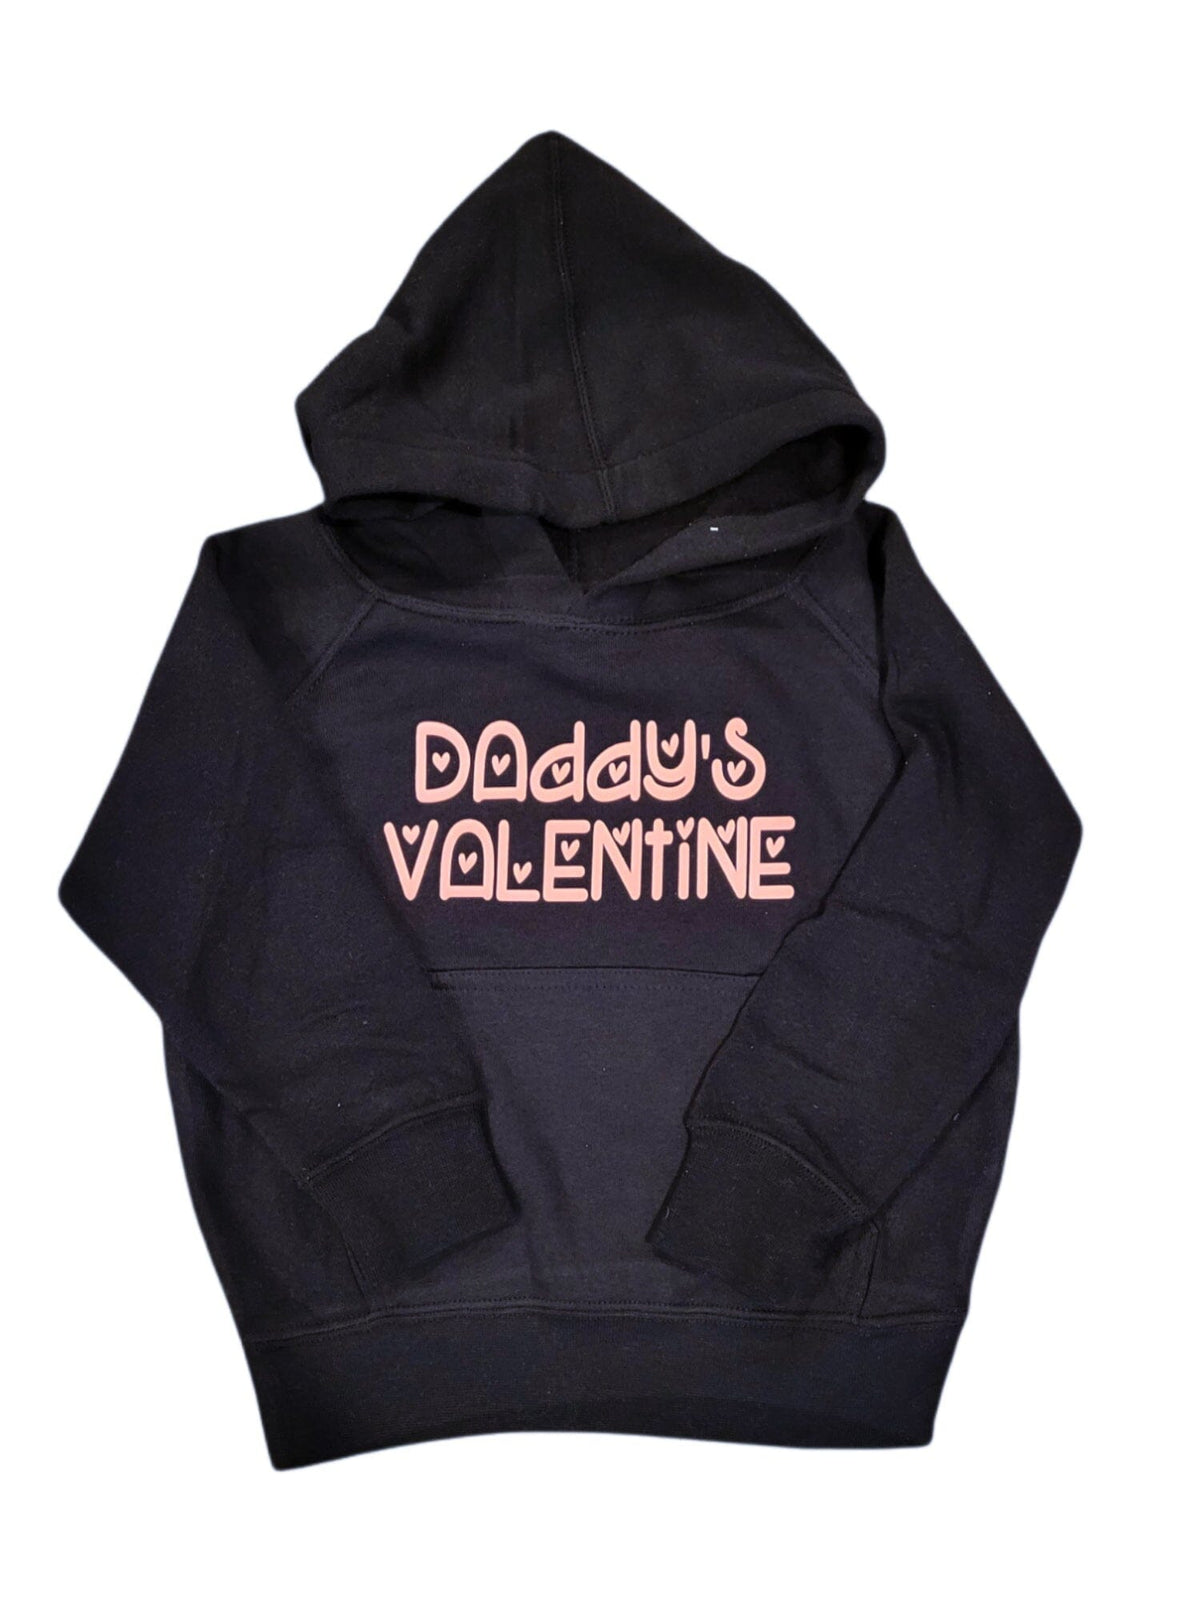 Daddy's Valentine Hoodie